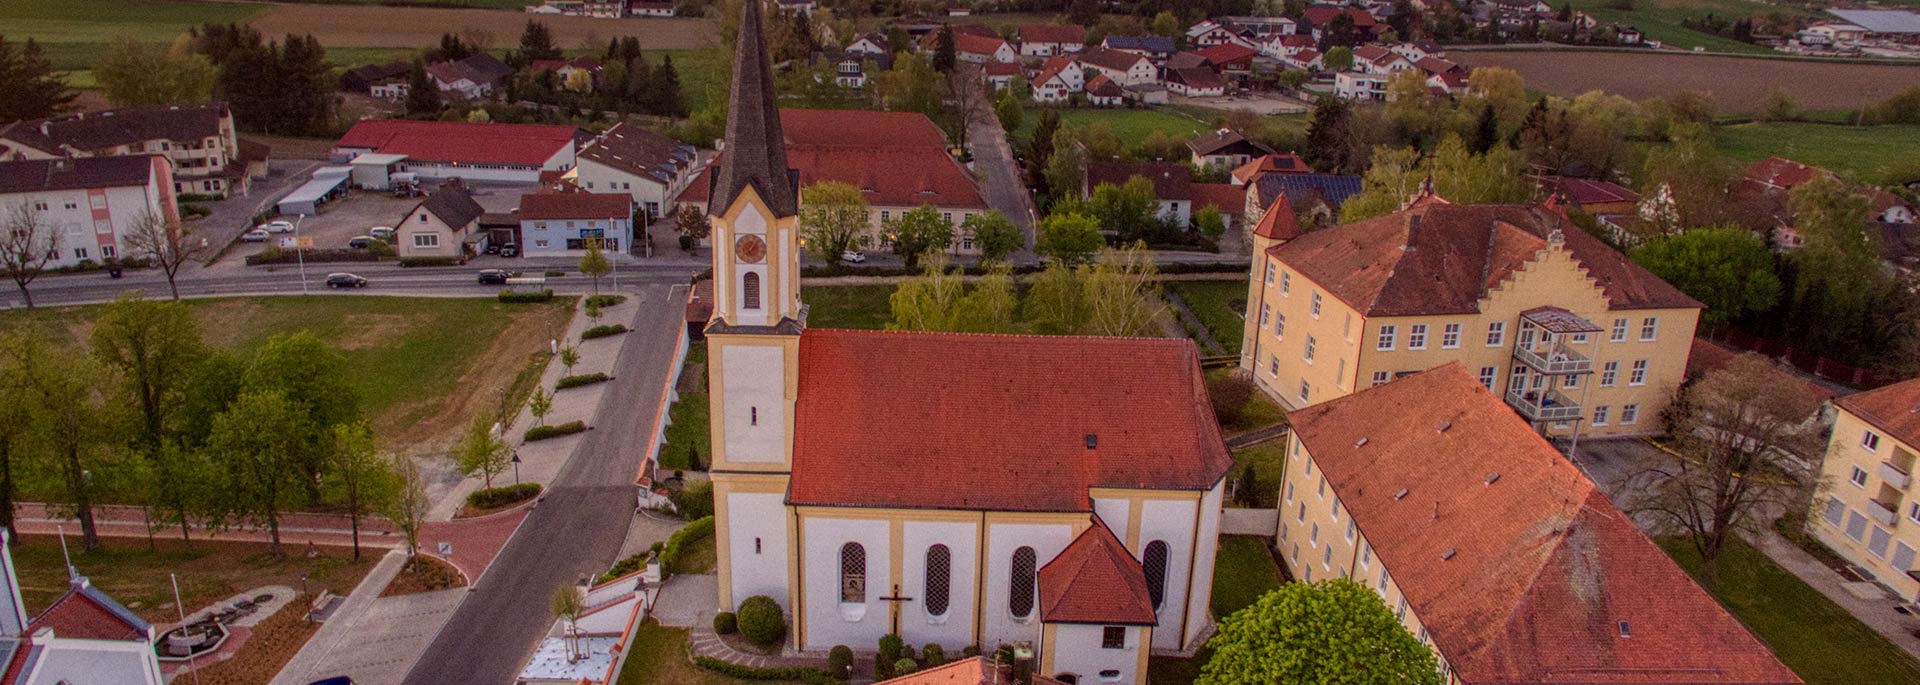 Pfarrkirche der Gemeinde Mengkofen